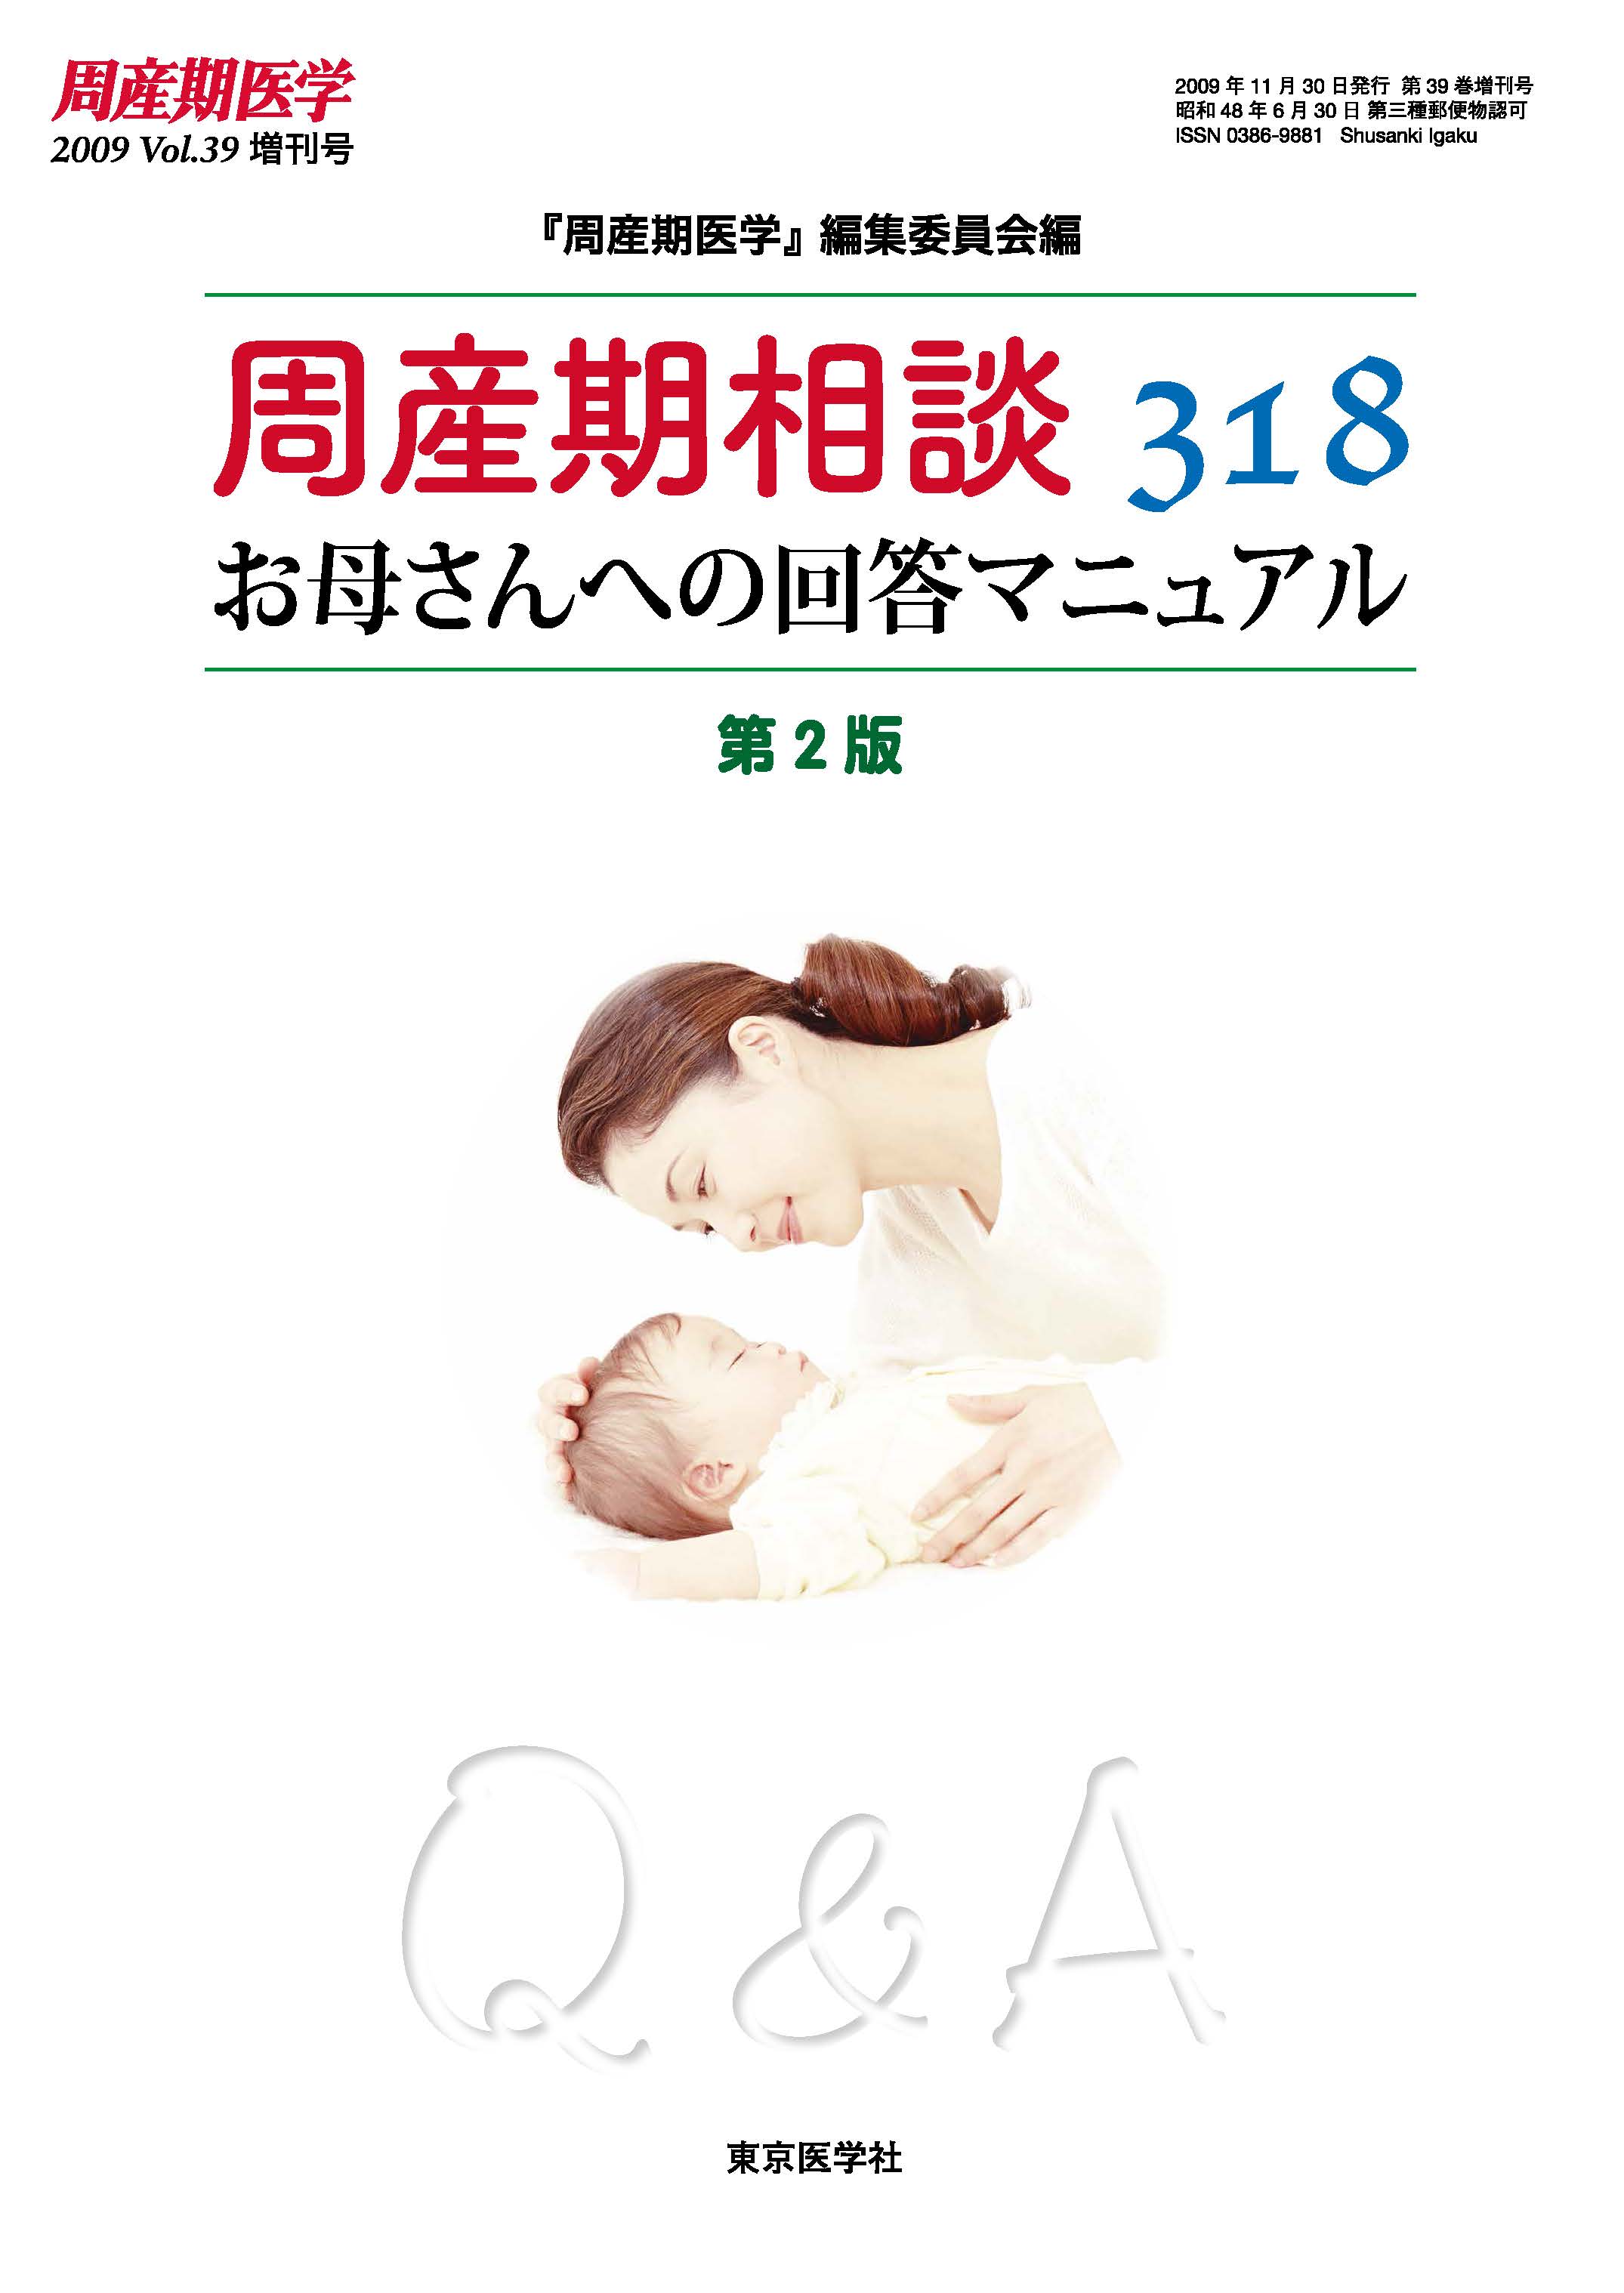 周産期医学第39巻2009年増刊号【電子版】 | 医書.jp